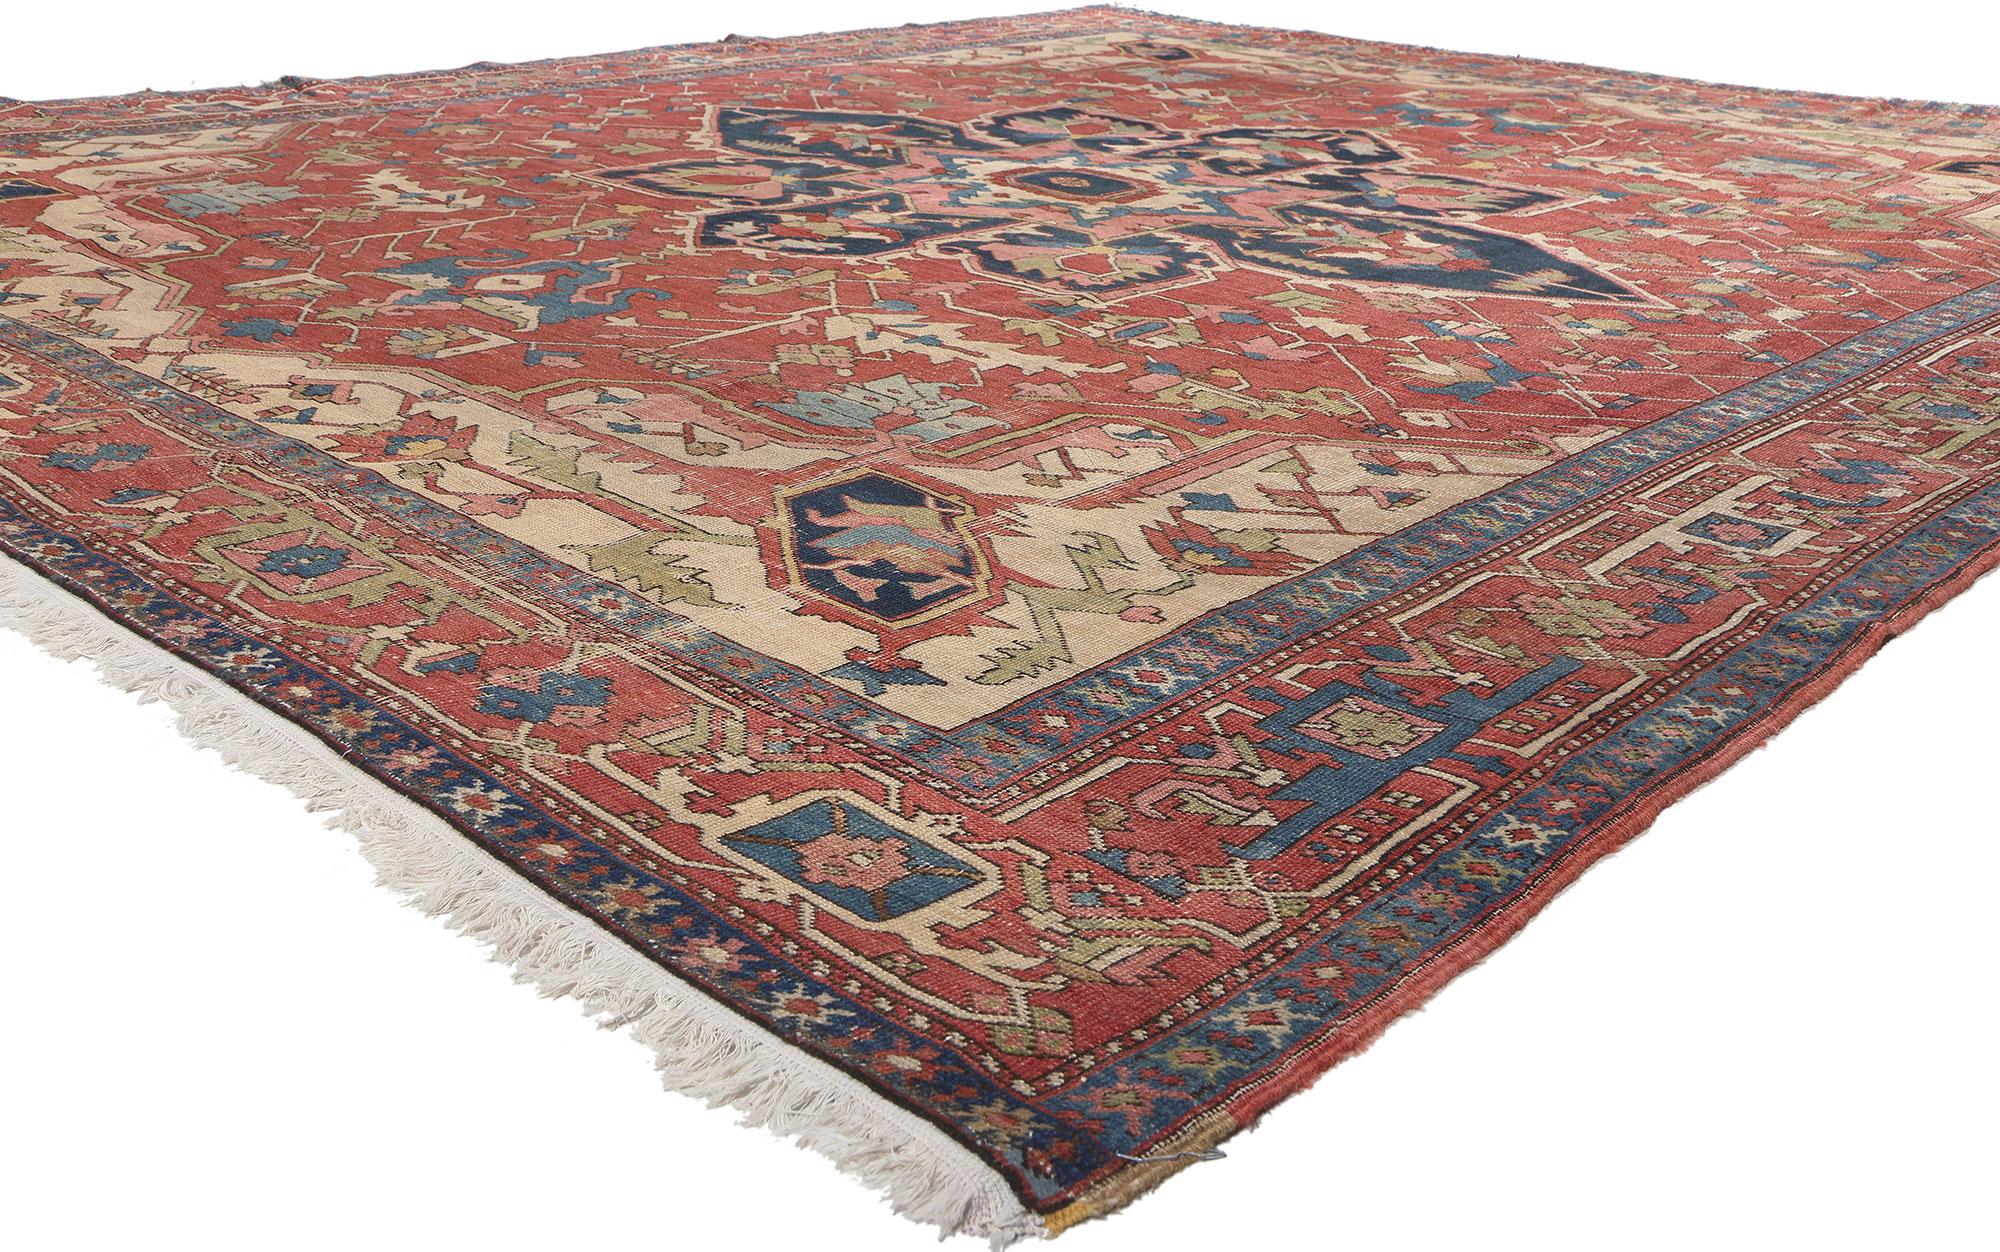 78671 Antik-getragener persischer Serapi-Teppich, 10'01 x 11'08. Serapi-Teppiche, die im Dorf Serab im Nordwesten Irans hergestellt werden, sind für ihre besonderen Merkmale bekannt. Diese Perserteppiche zeichnen sich durch geometrische Muster, von